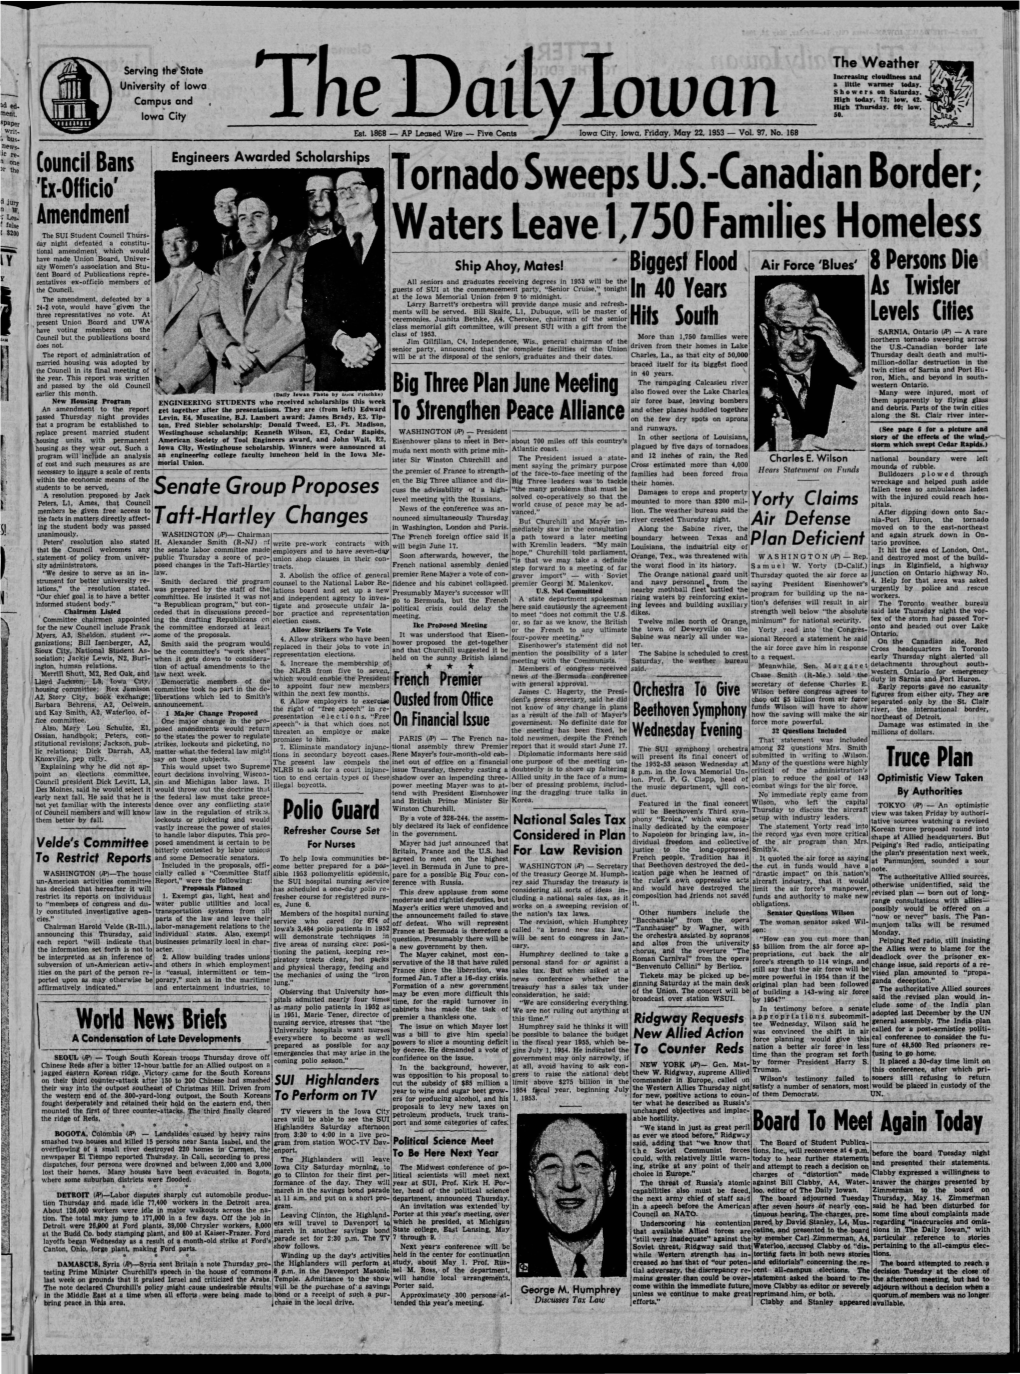 Daily Iowan (Iowa City, Iowa), 1953-05-22